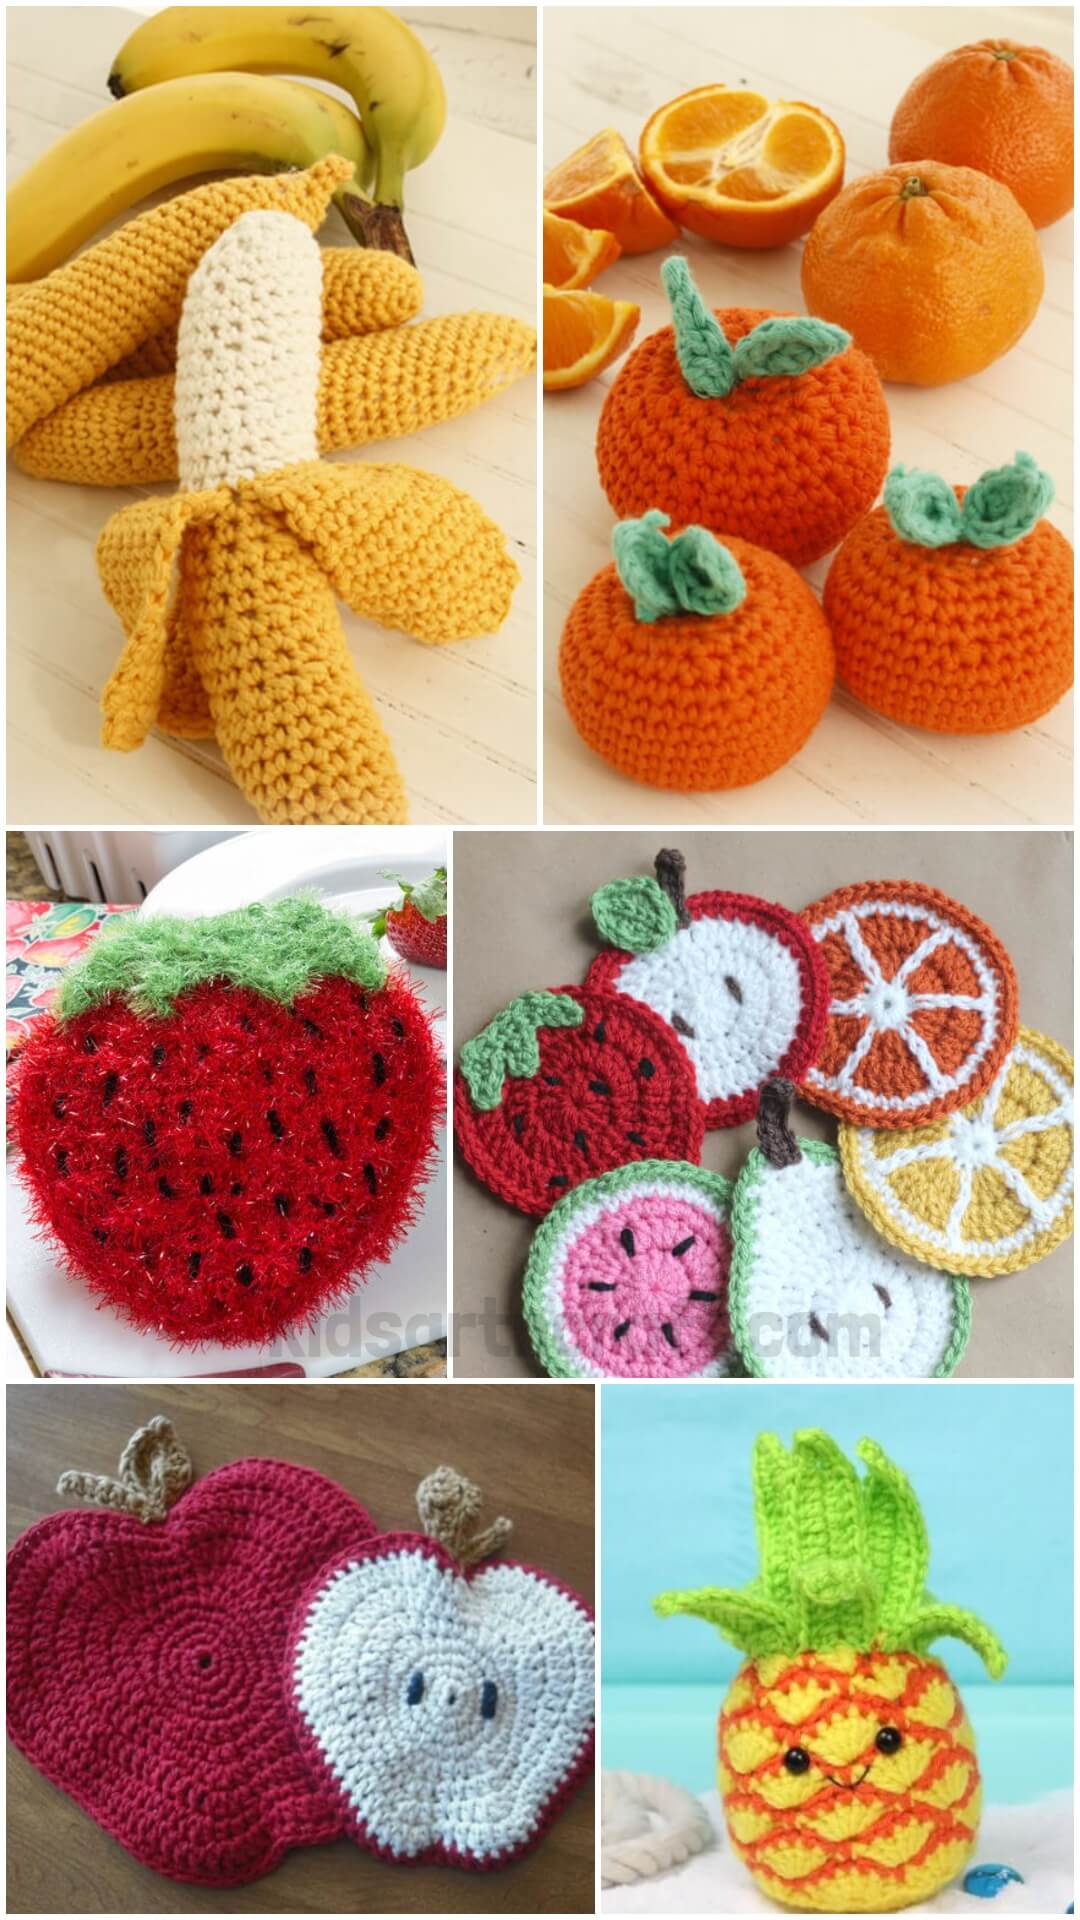 Crochet Fruits Patterns